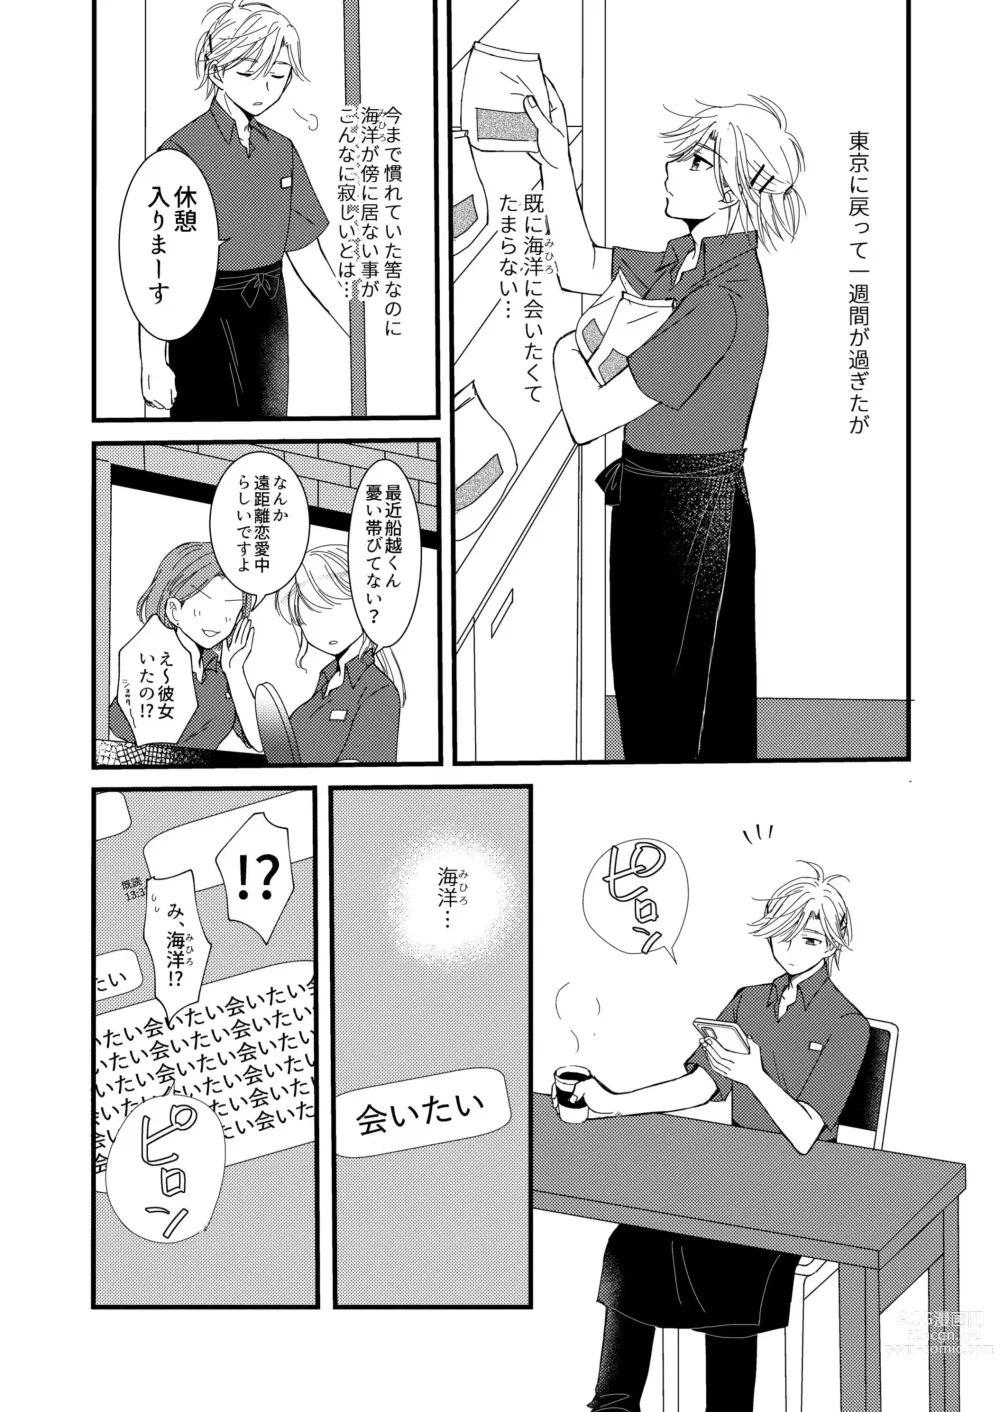 Page 54 of doujinshi Oitekita Umi